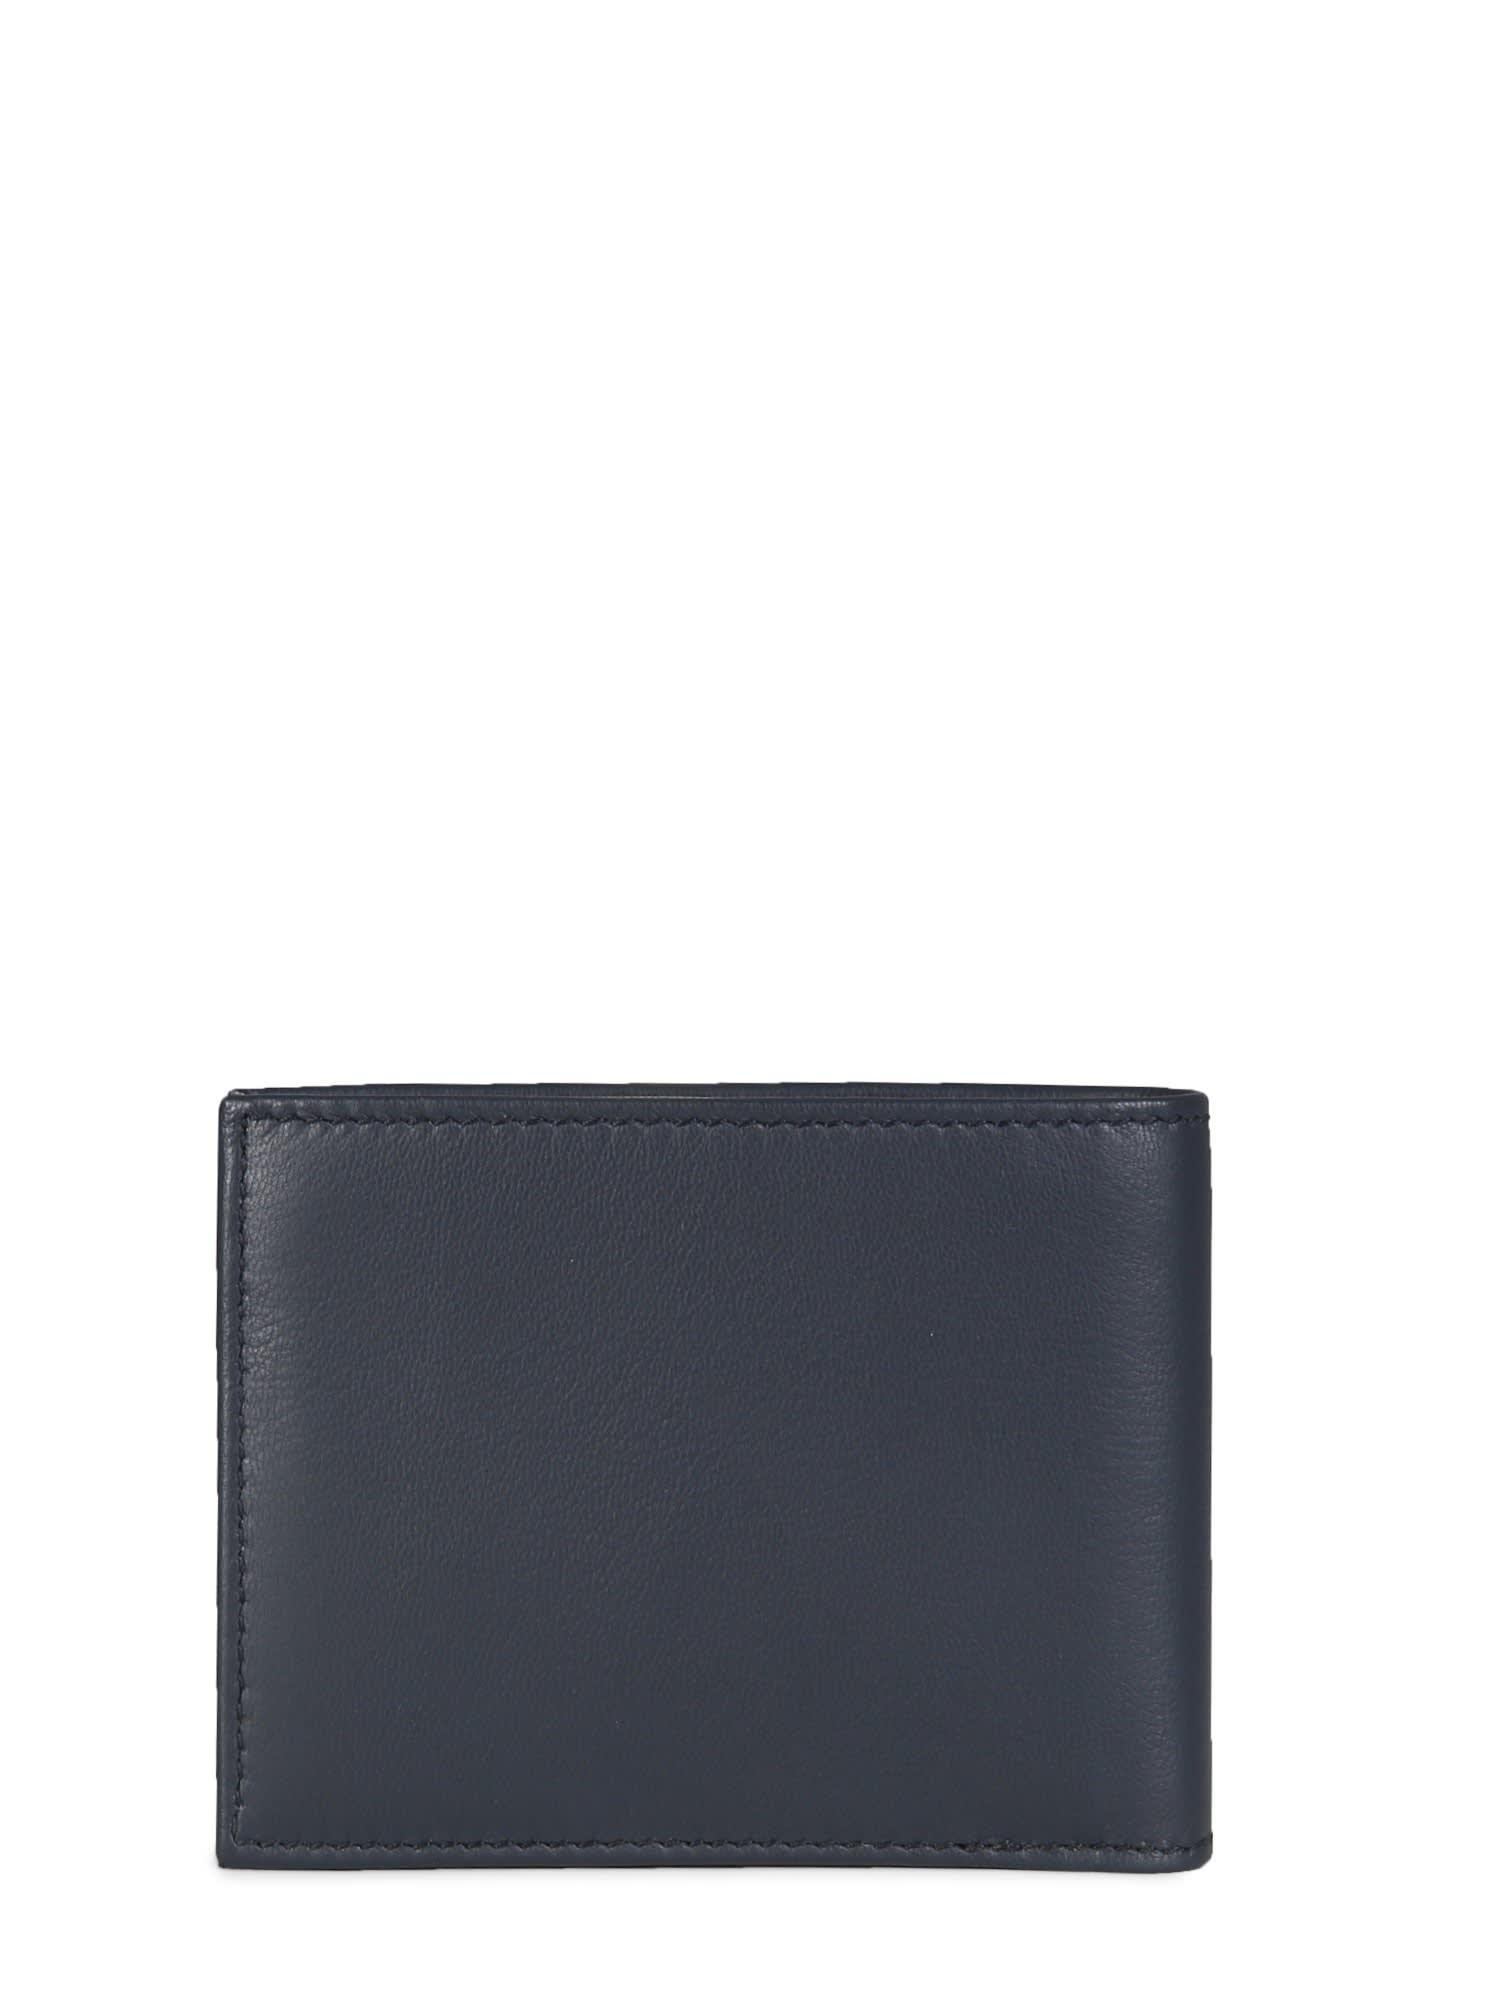 BOSS by HUGO BOSS Leather Wallet in Blue for Men | Lyst